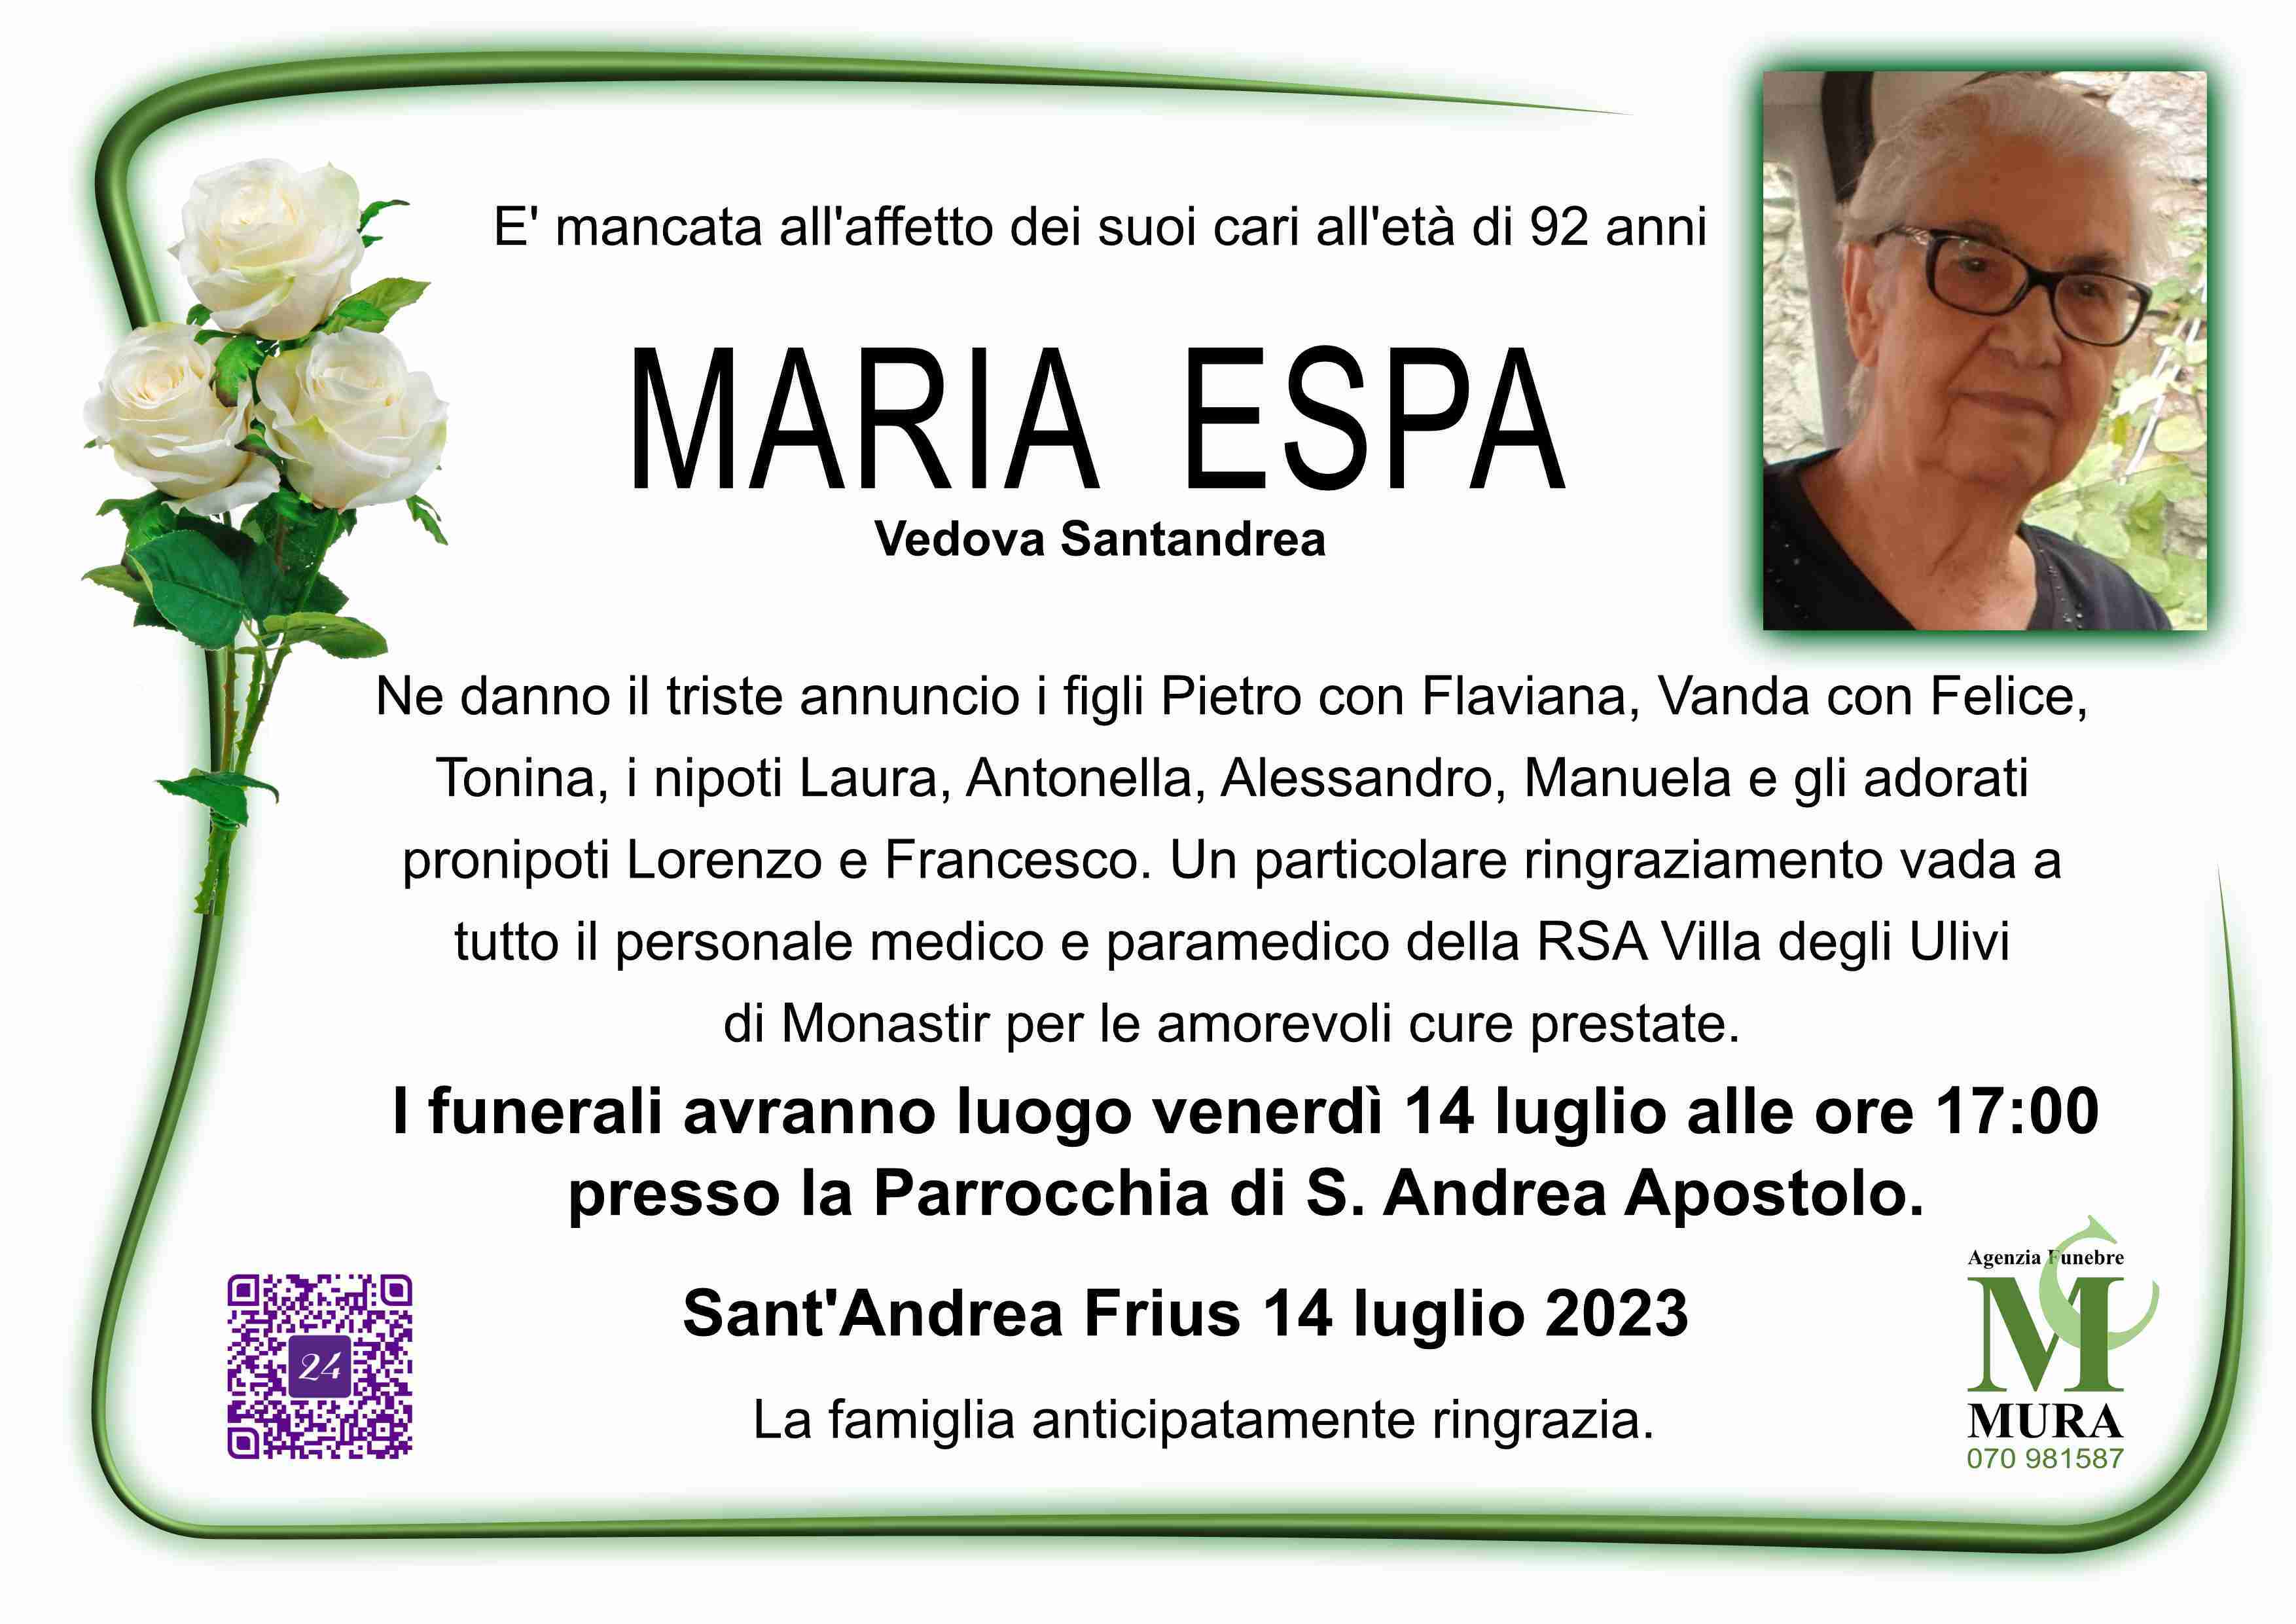 Maria Espa